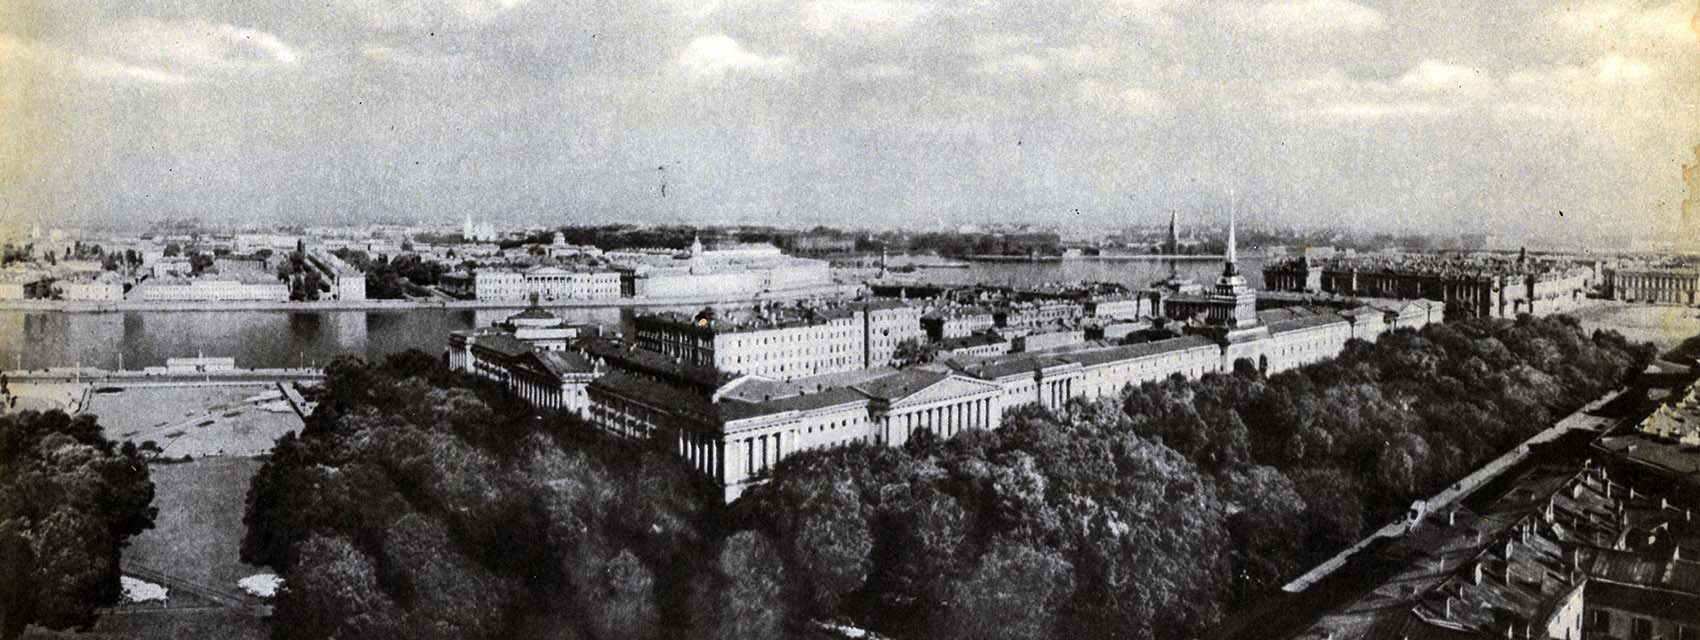 Petersburg, Адмиралтейский проезд, 1